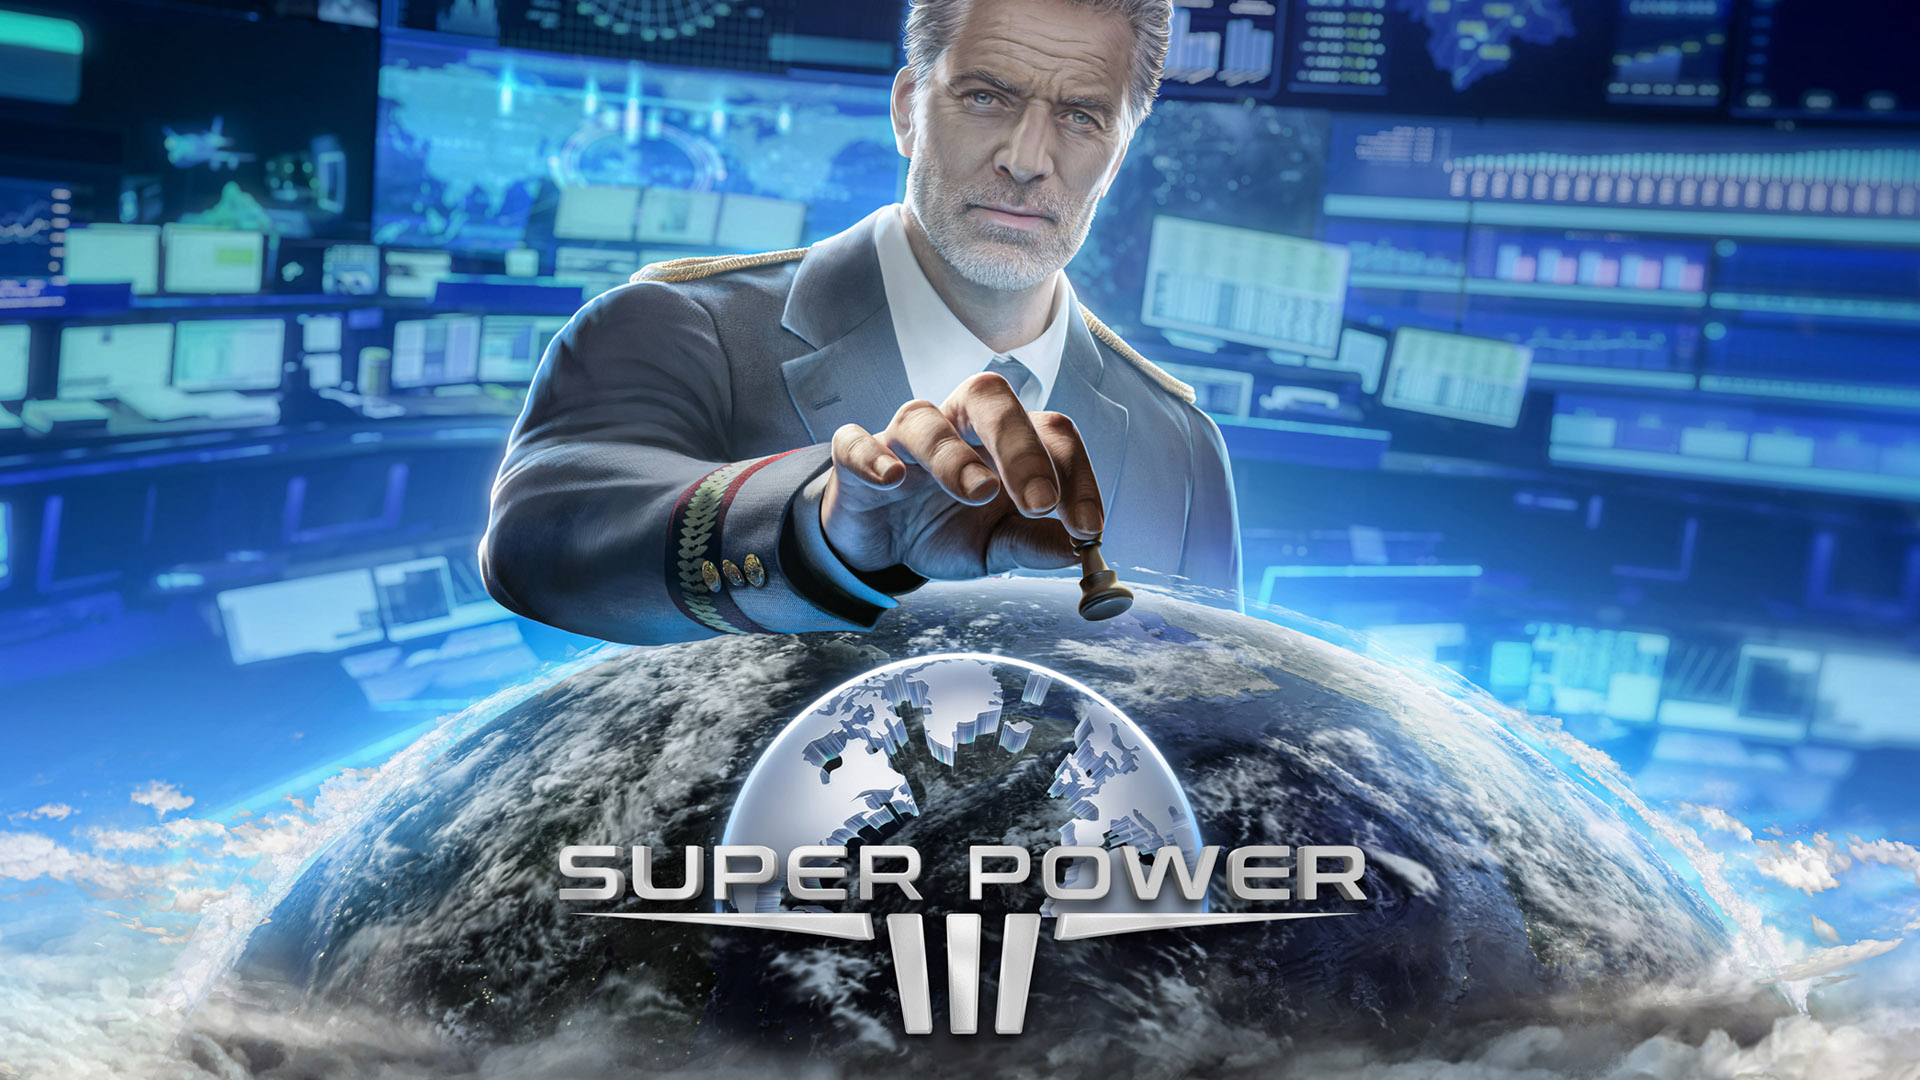 SuperPower III